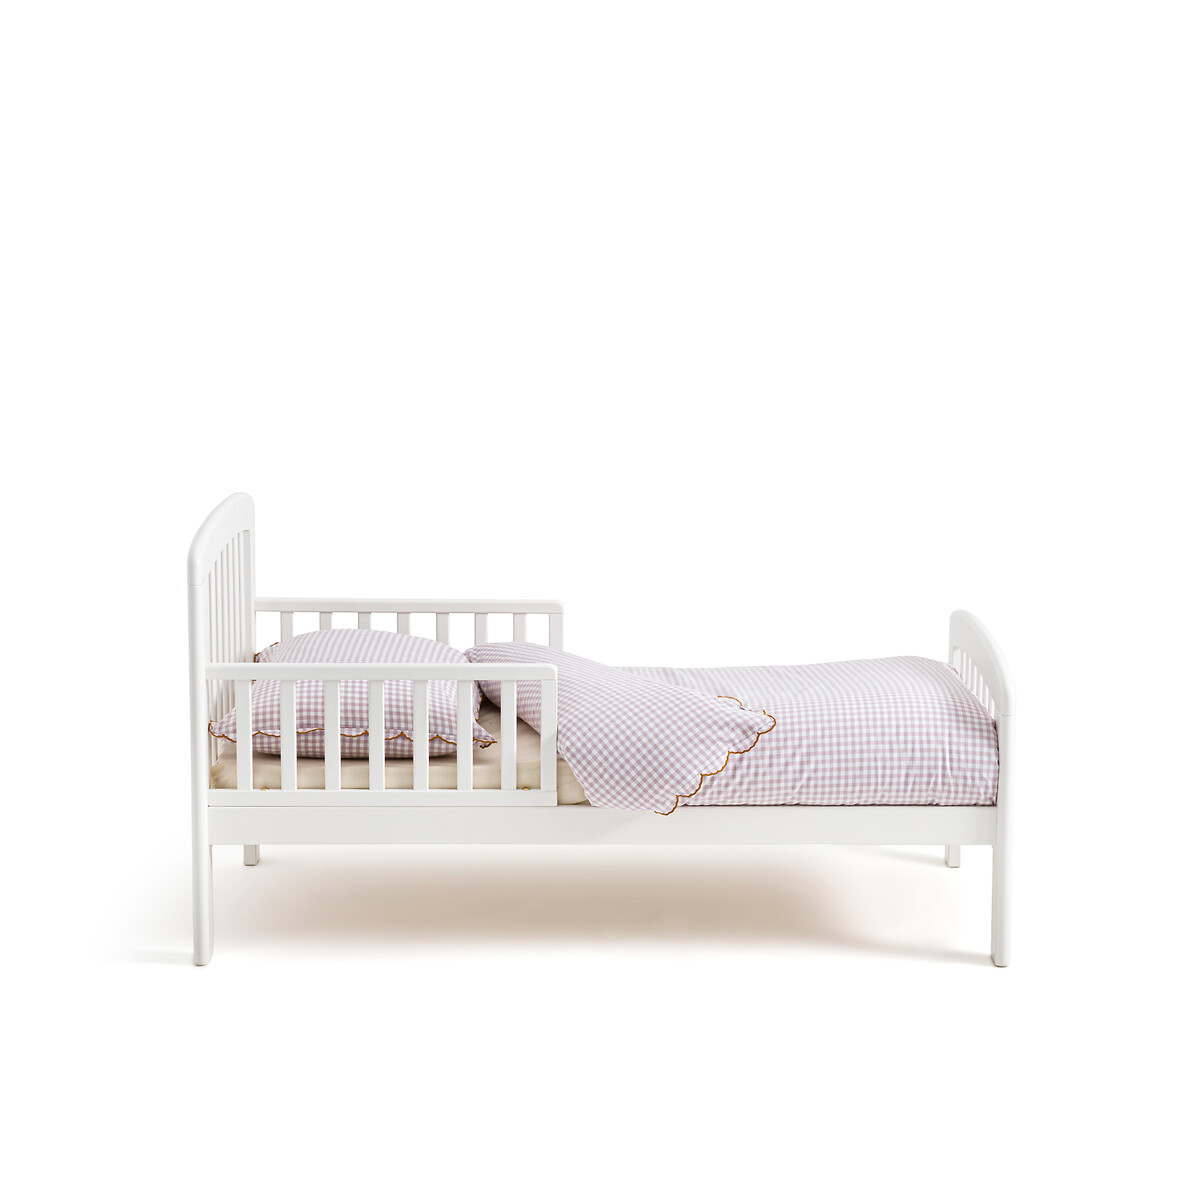 Кровать детская из березы Soti  70 x 140 см белый LaRedoute, размер 70 x 140 см - фото 3